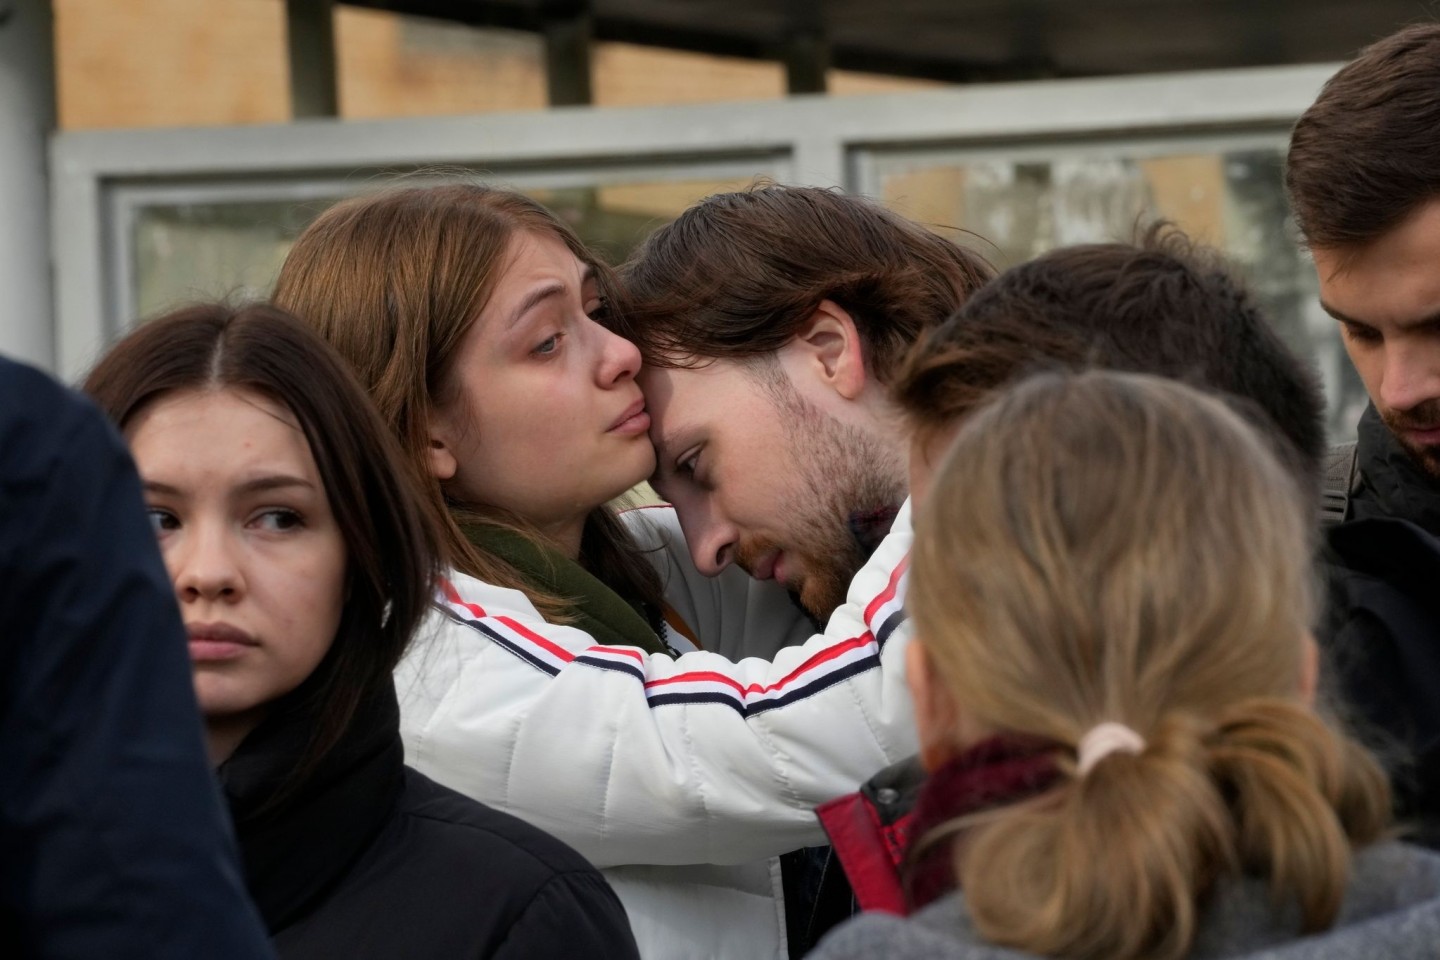 Studenten trösten sich gegenseitig während einer Versammlung nach der Schießerei auf dem Campus der Staatlichen Universität Perm.